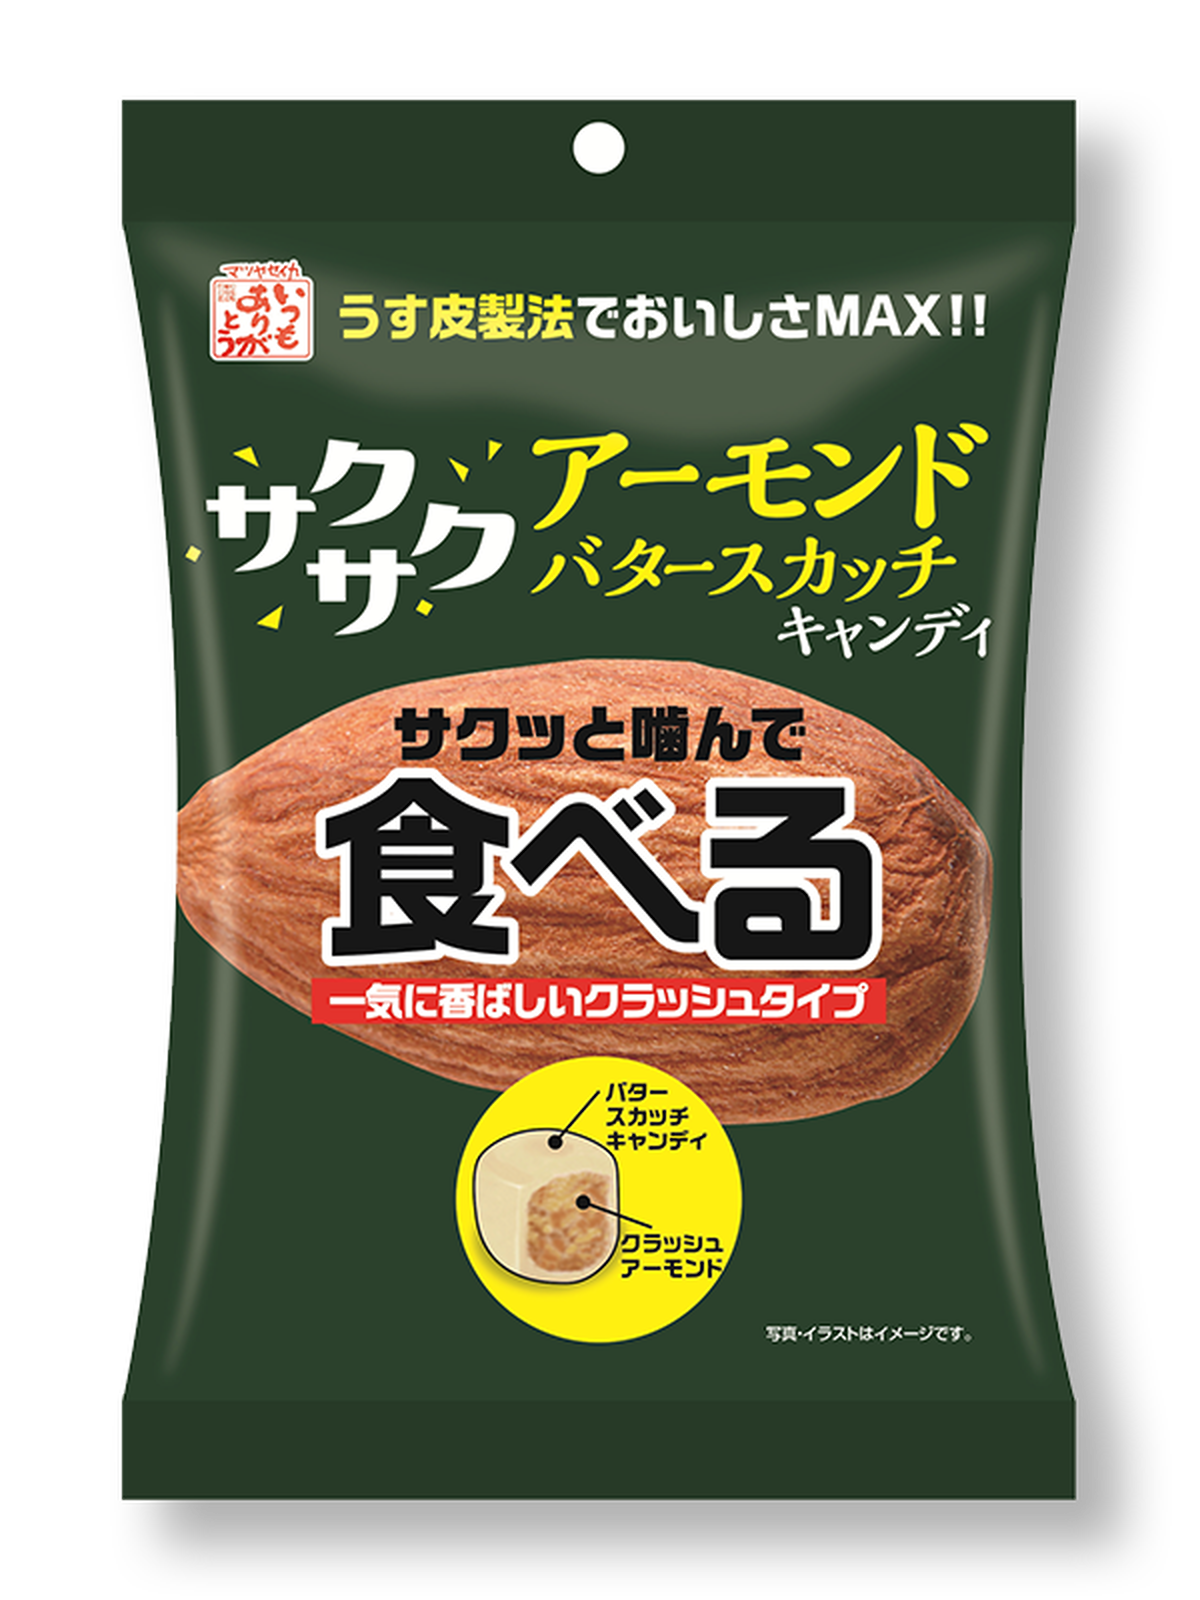 食べるアーモンドバタースカッチキャンディ Matsuyanet